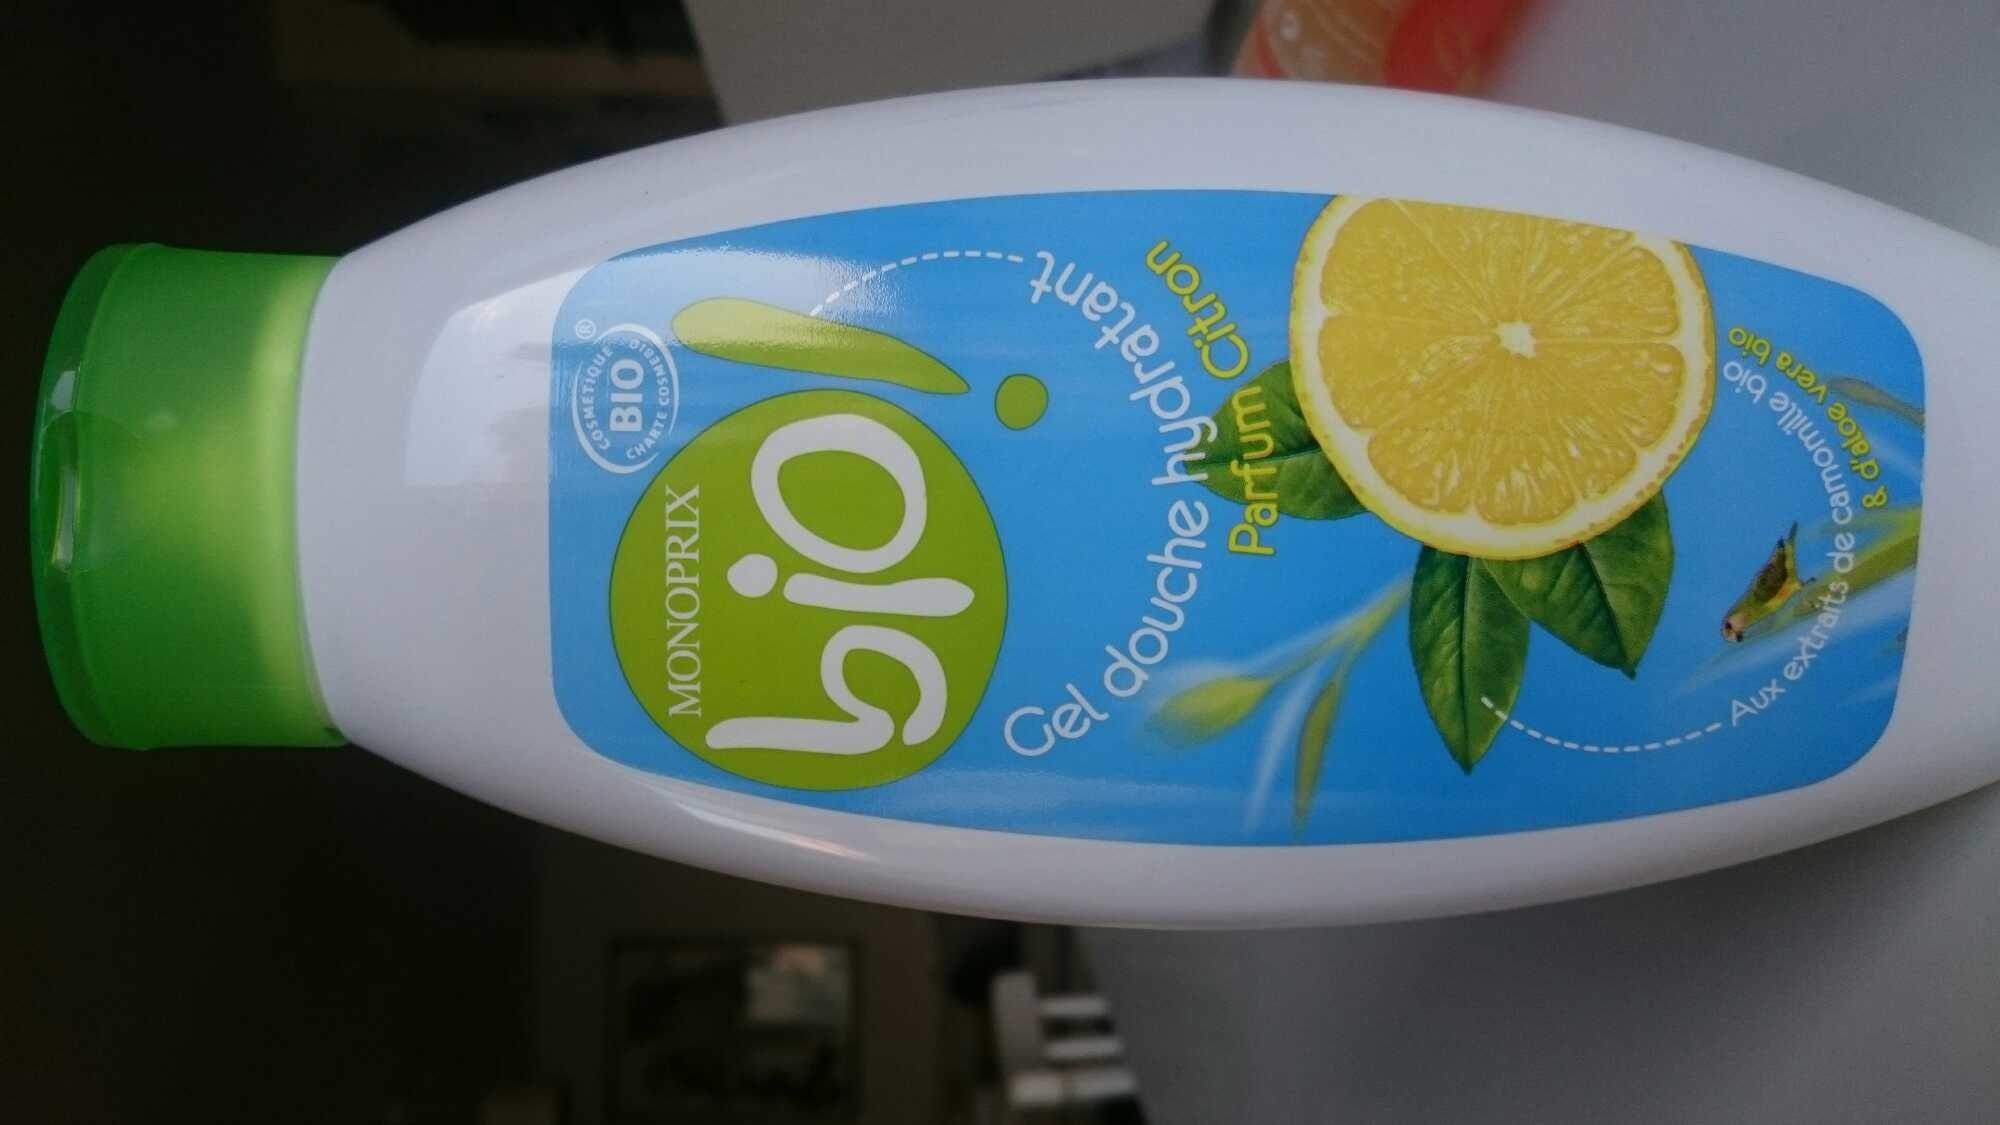 Gel douche hydratant parfum citron - Product - fr